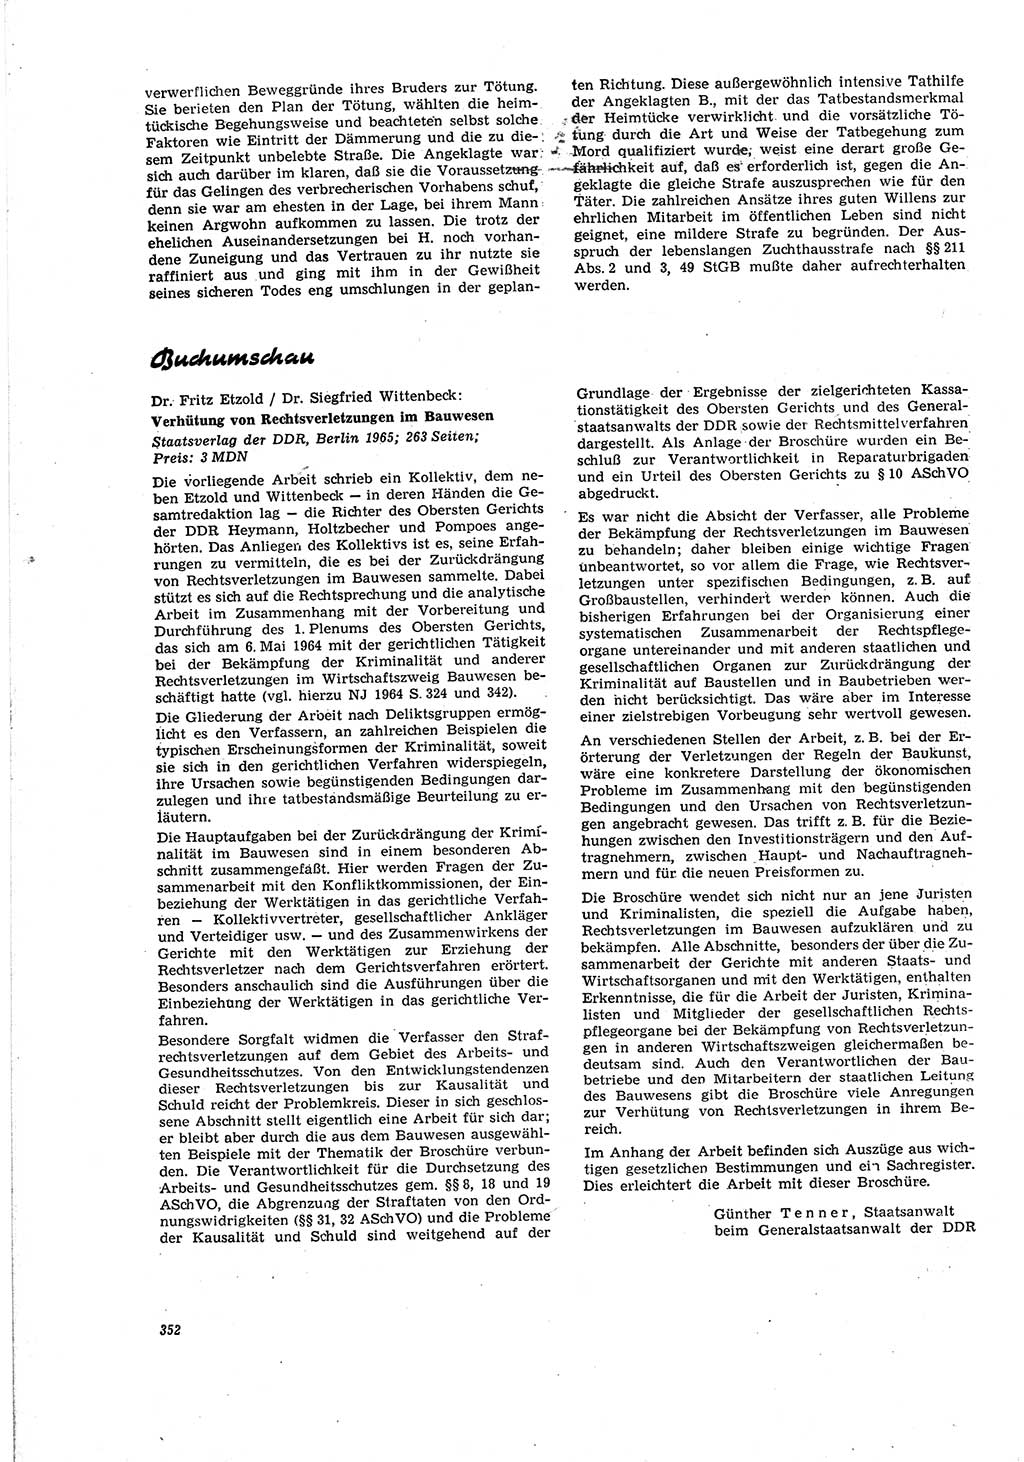 Neue Justiz (NJ), Zeitschrift für Recht und Rechtswissenschaft [Deutsche Demokratische Republik (DDR)], 20. Jahrgang 1966, Seite 352 (NJ DDR 1966, S. 352)